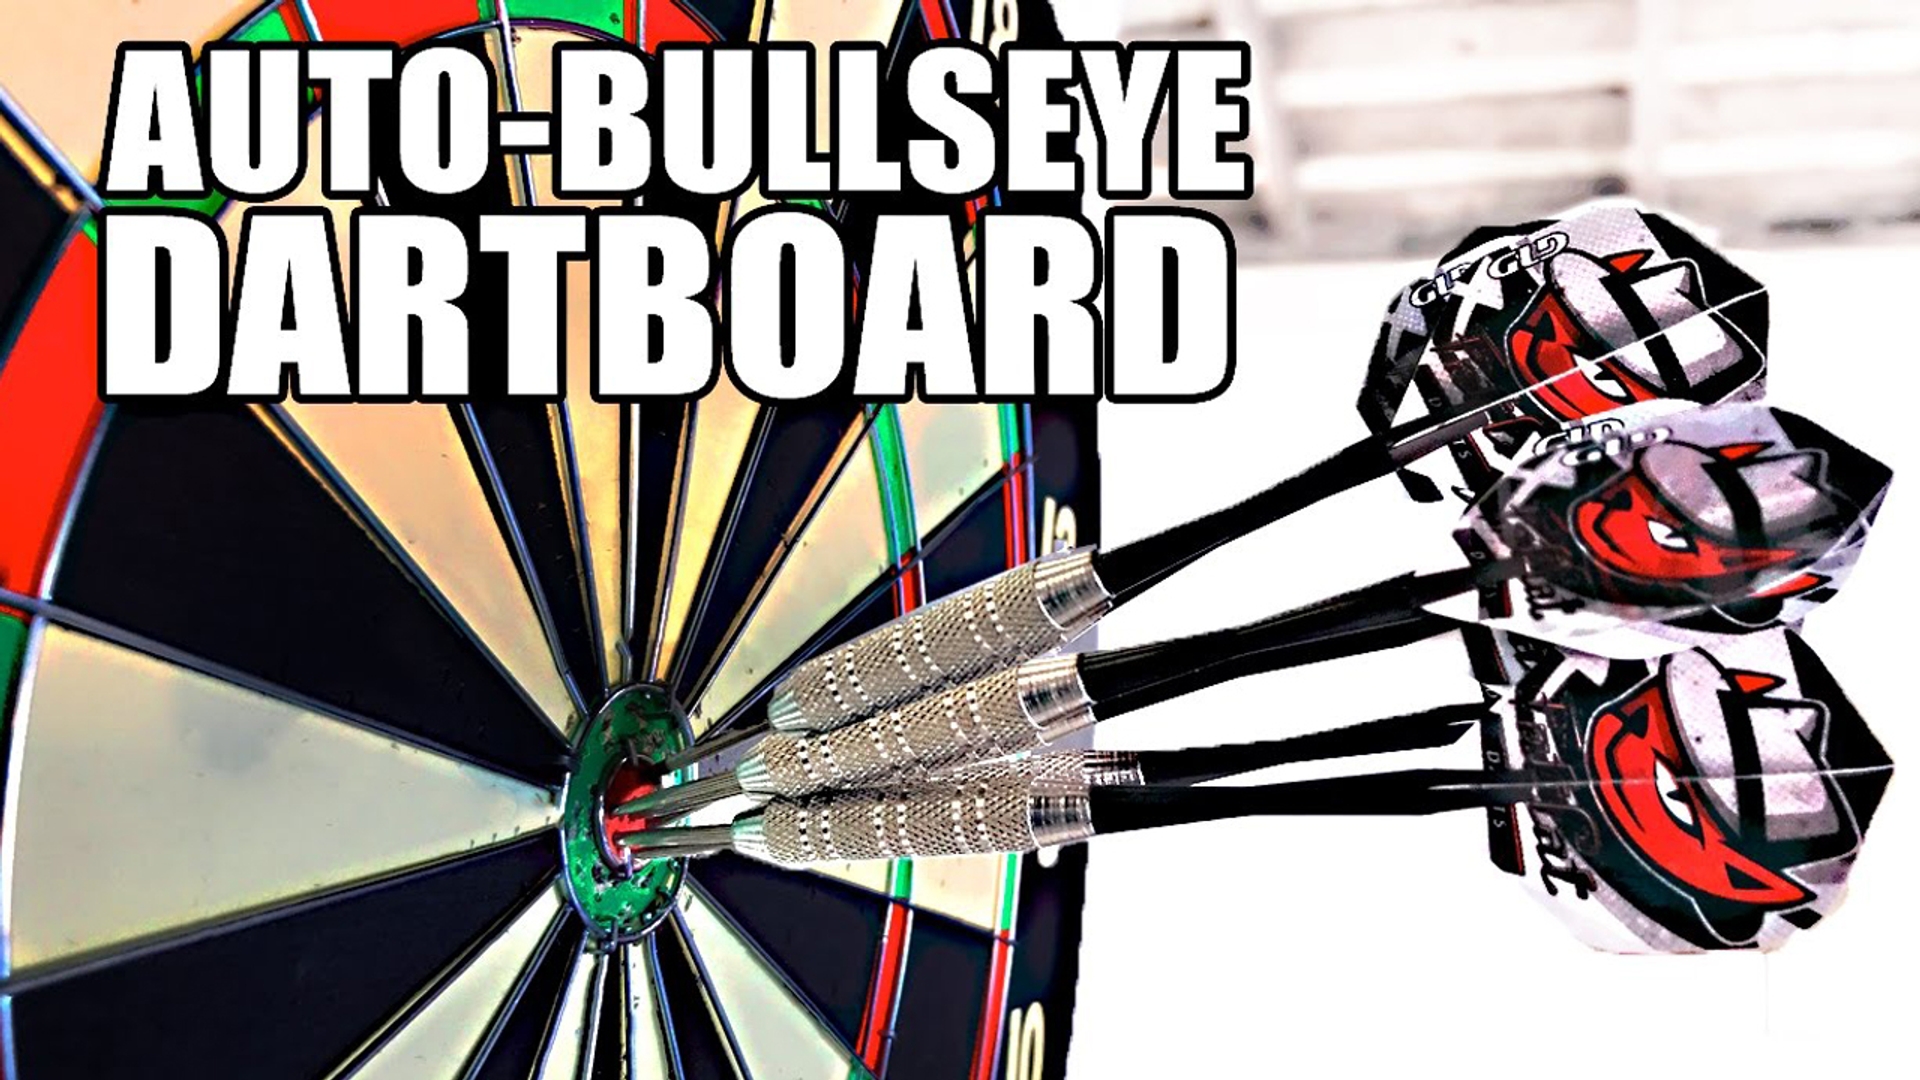 Automatic Bullseye MOVING Dartboard